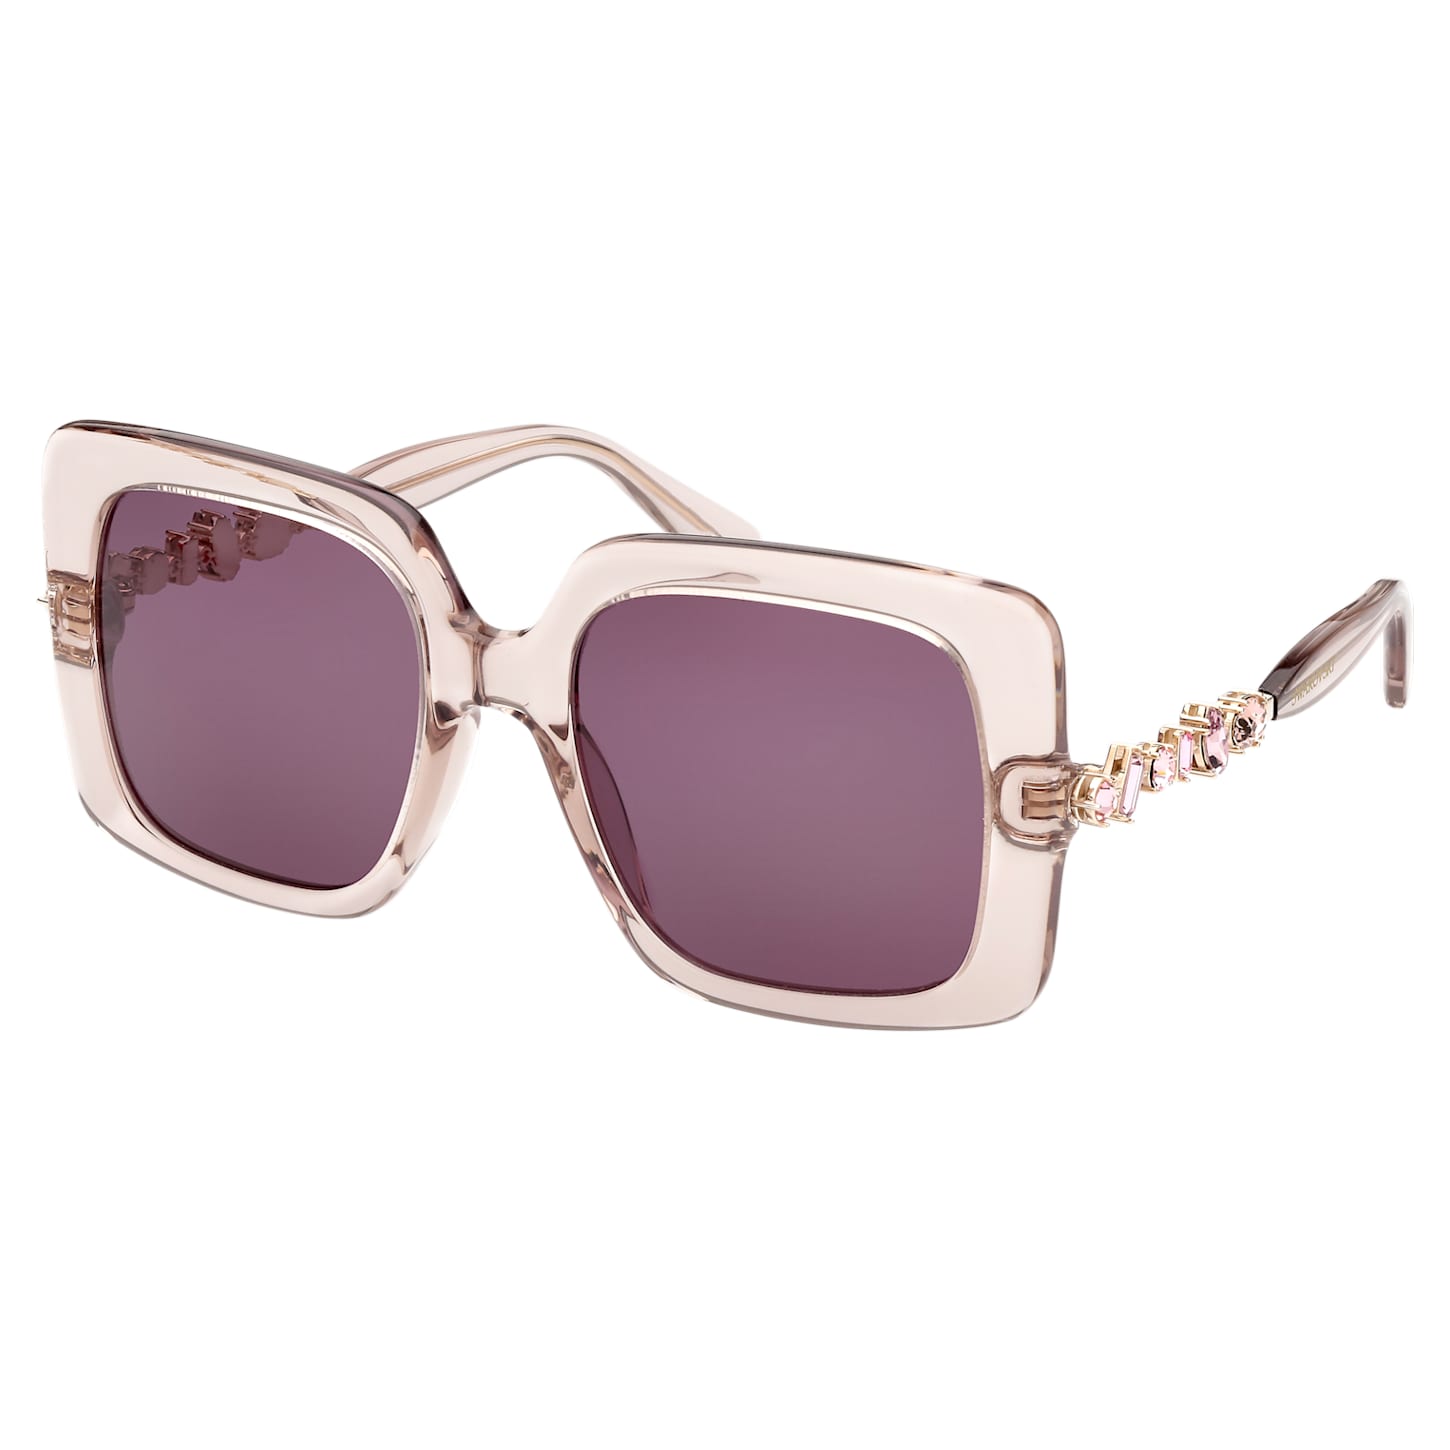 Sunglasses Oversized Square Shape Sk0357 20s Purple Swarovski